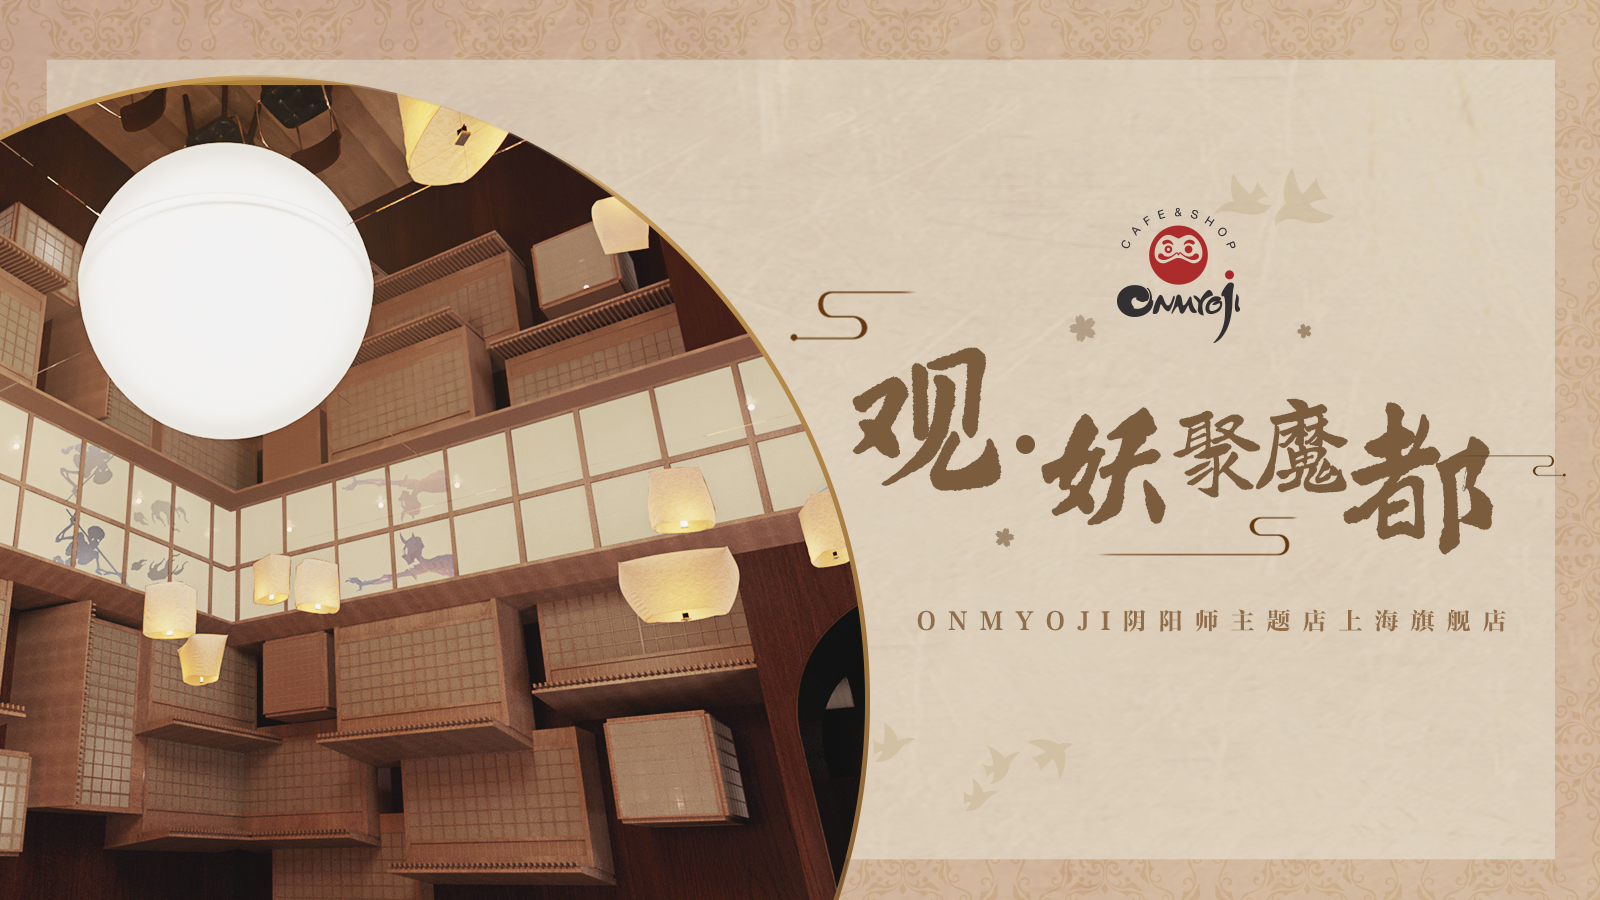 妖约魔都 Onmyoji阴阳师主题店即将在上海再开新店-游戏价值论